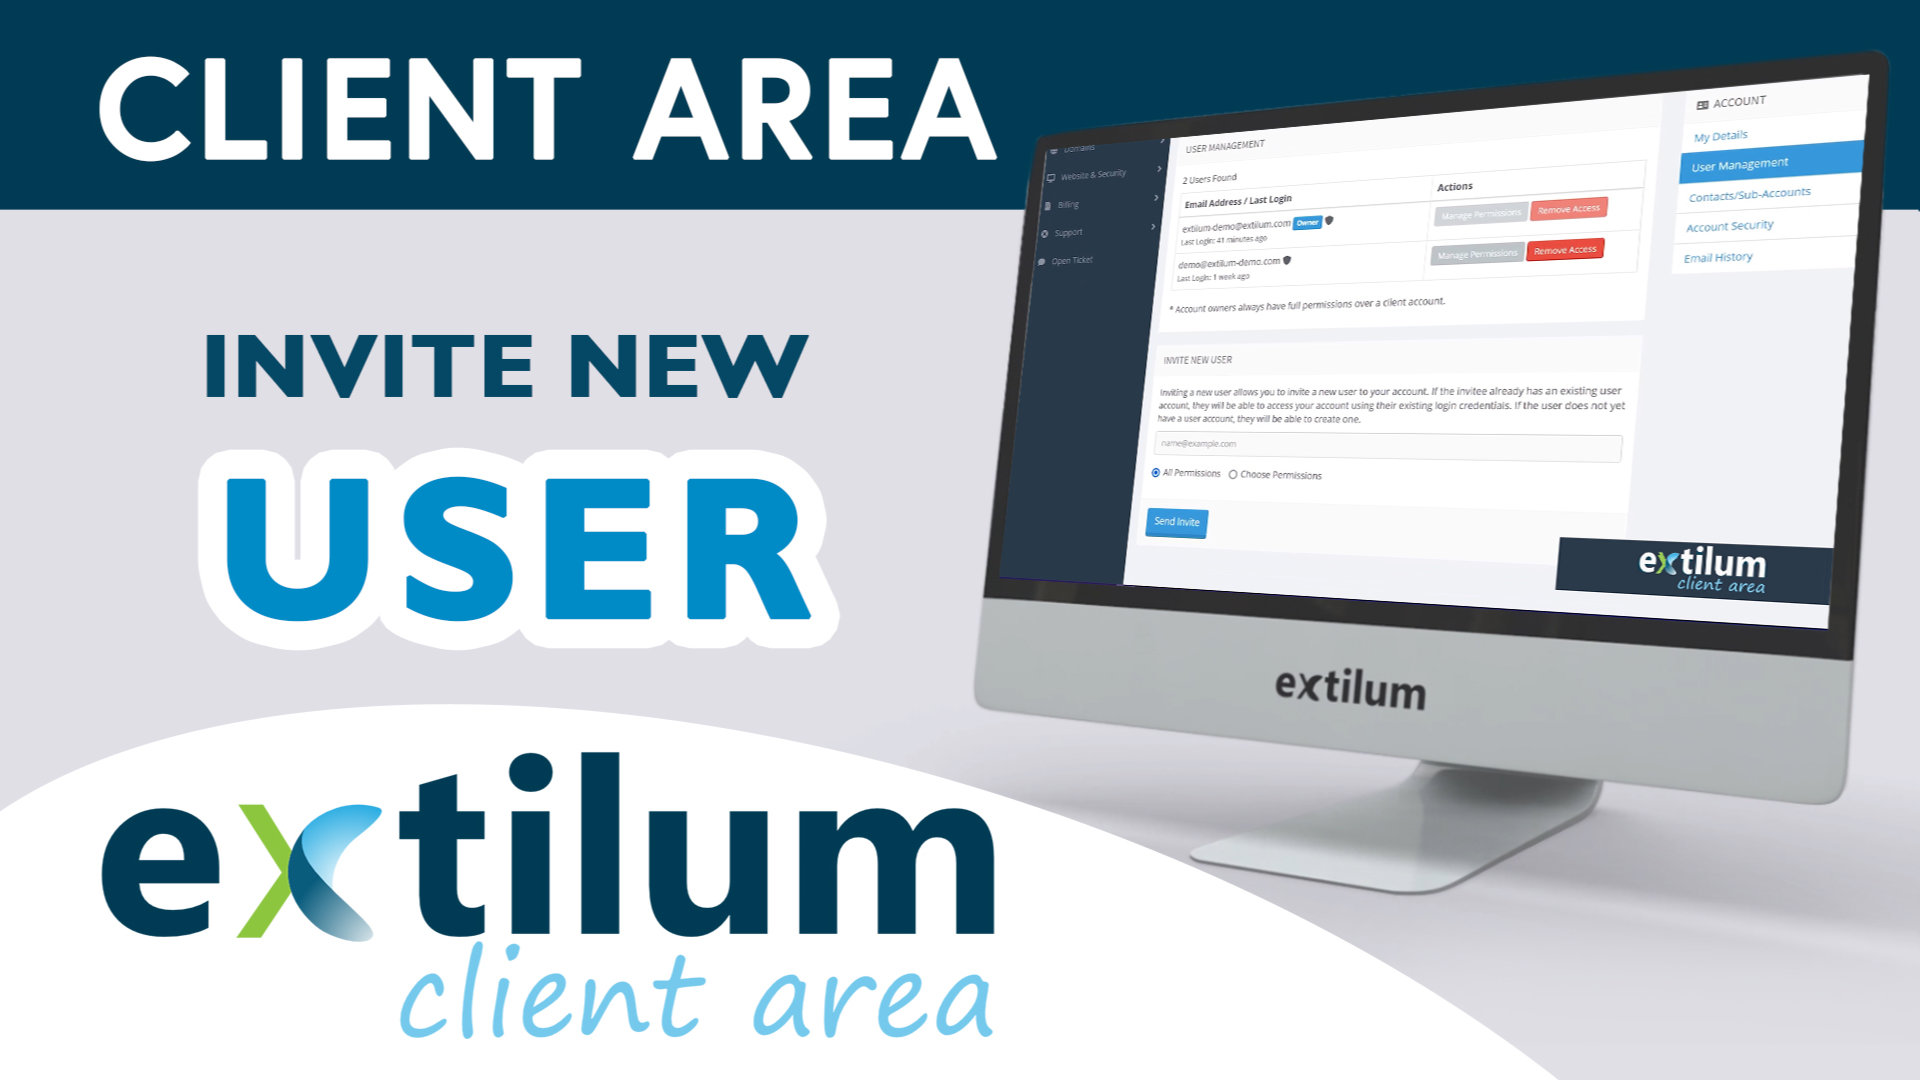 Extilum Client Area - Invite New User